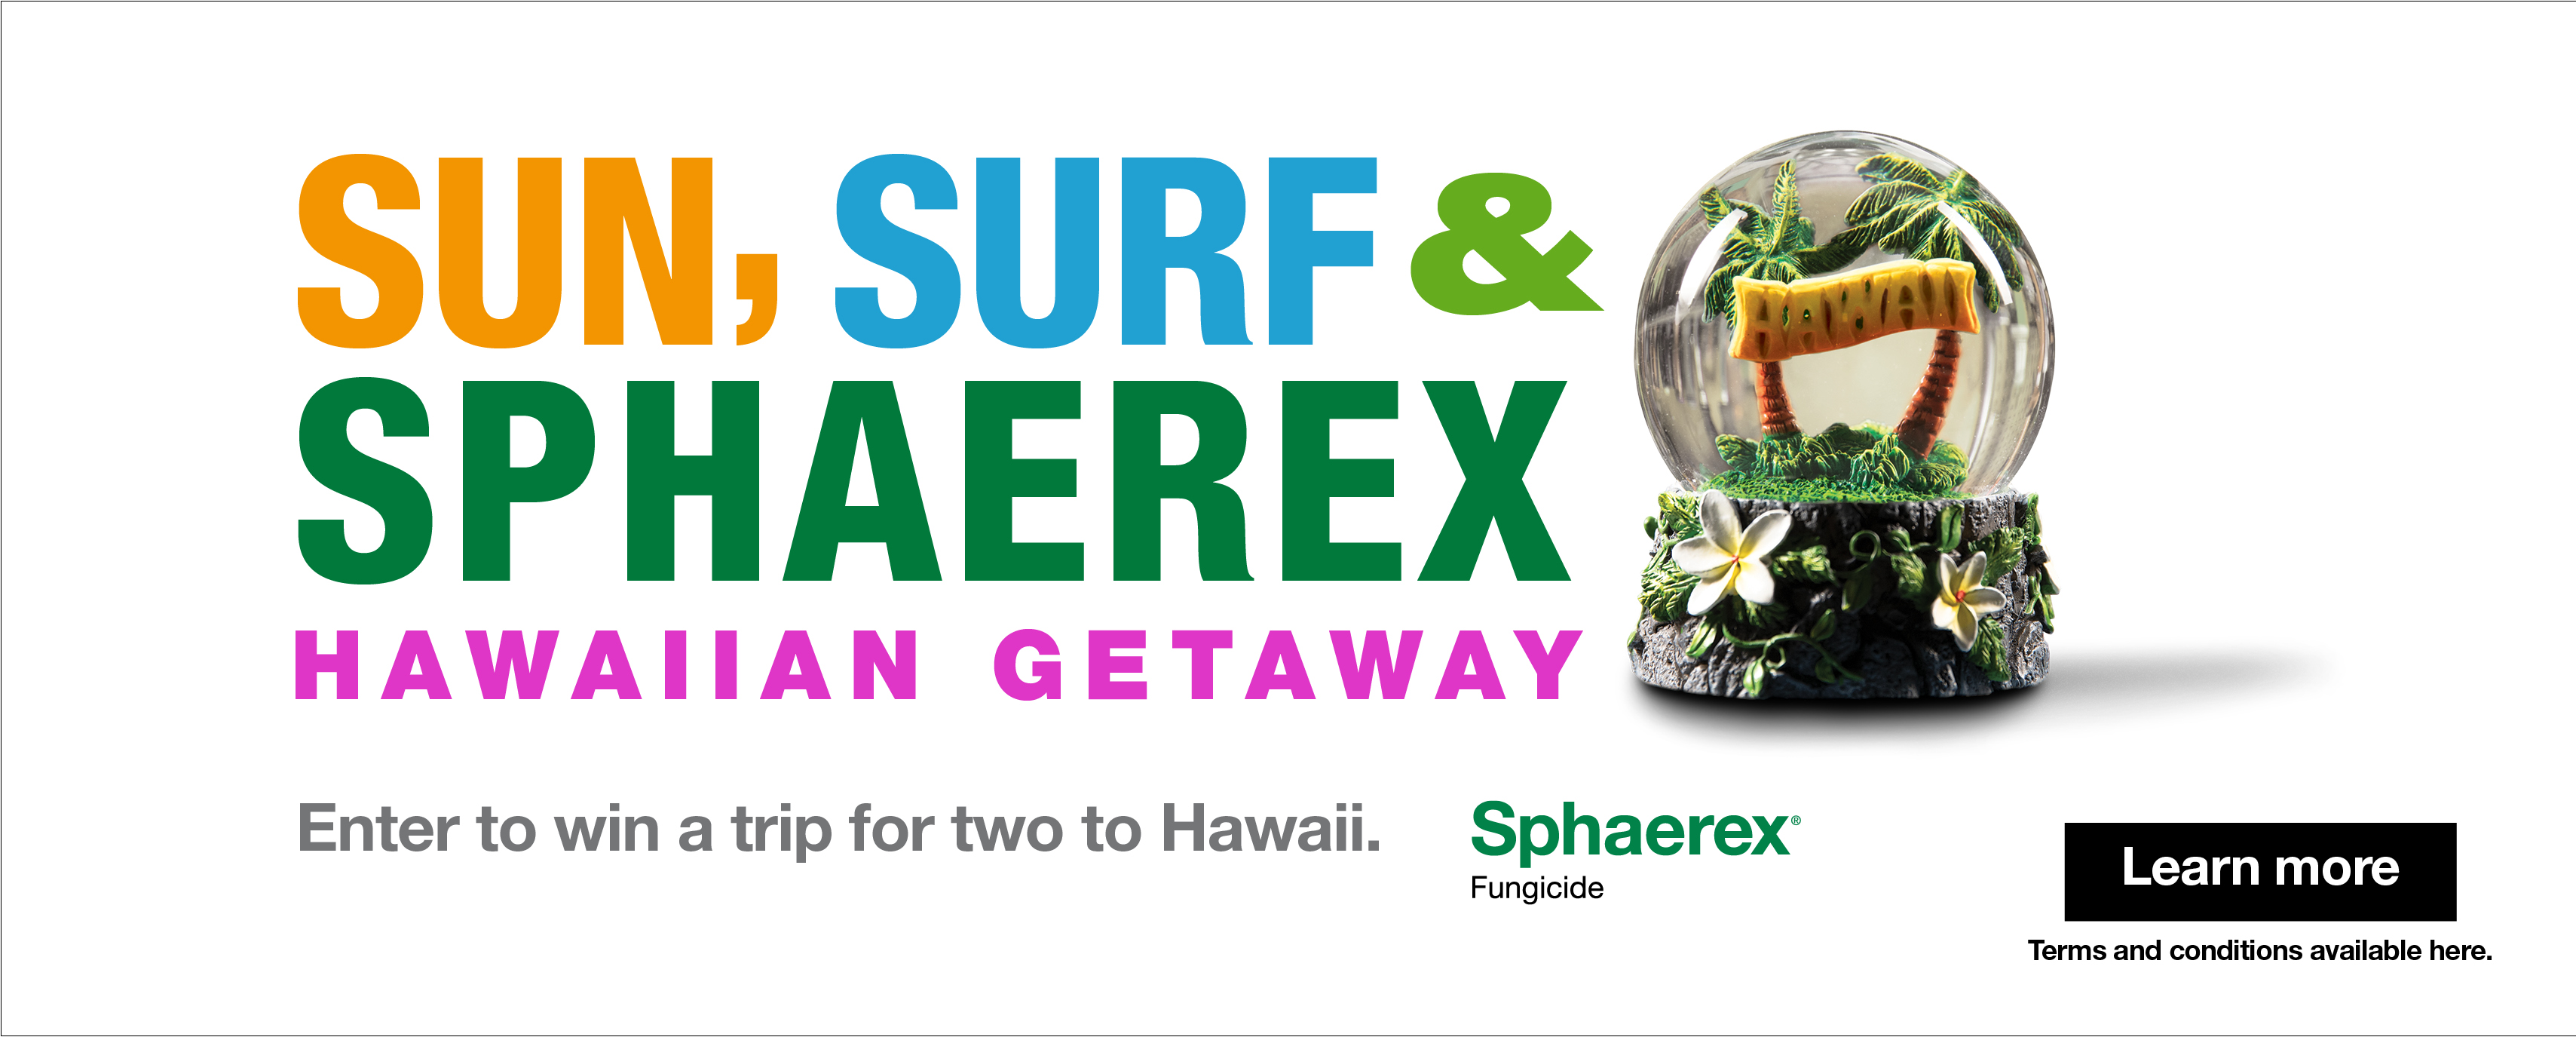 Sun, Surf & Sphaerex Hawaiian Getaway - Learn more